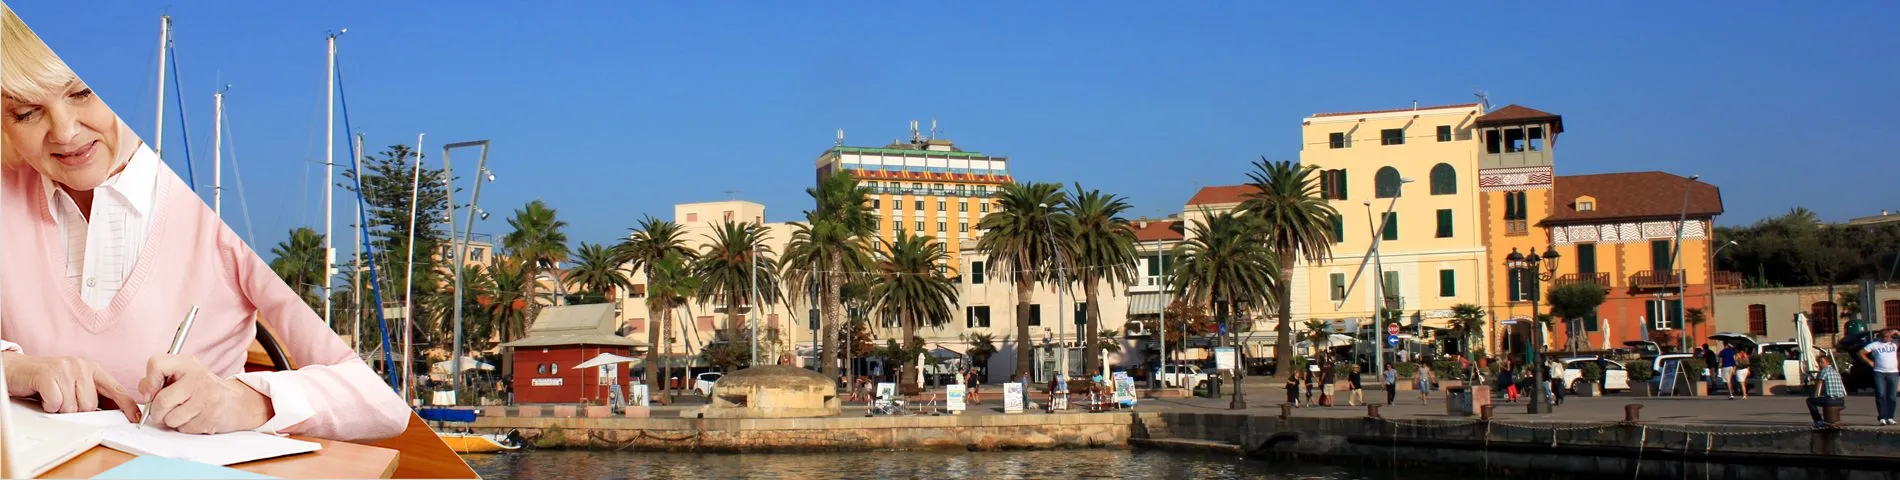 Alguer (Sardenya) - Sènior (més de 50 anys)